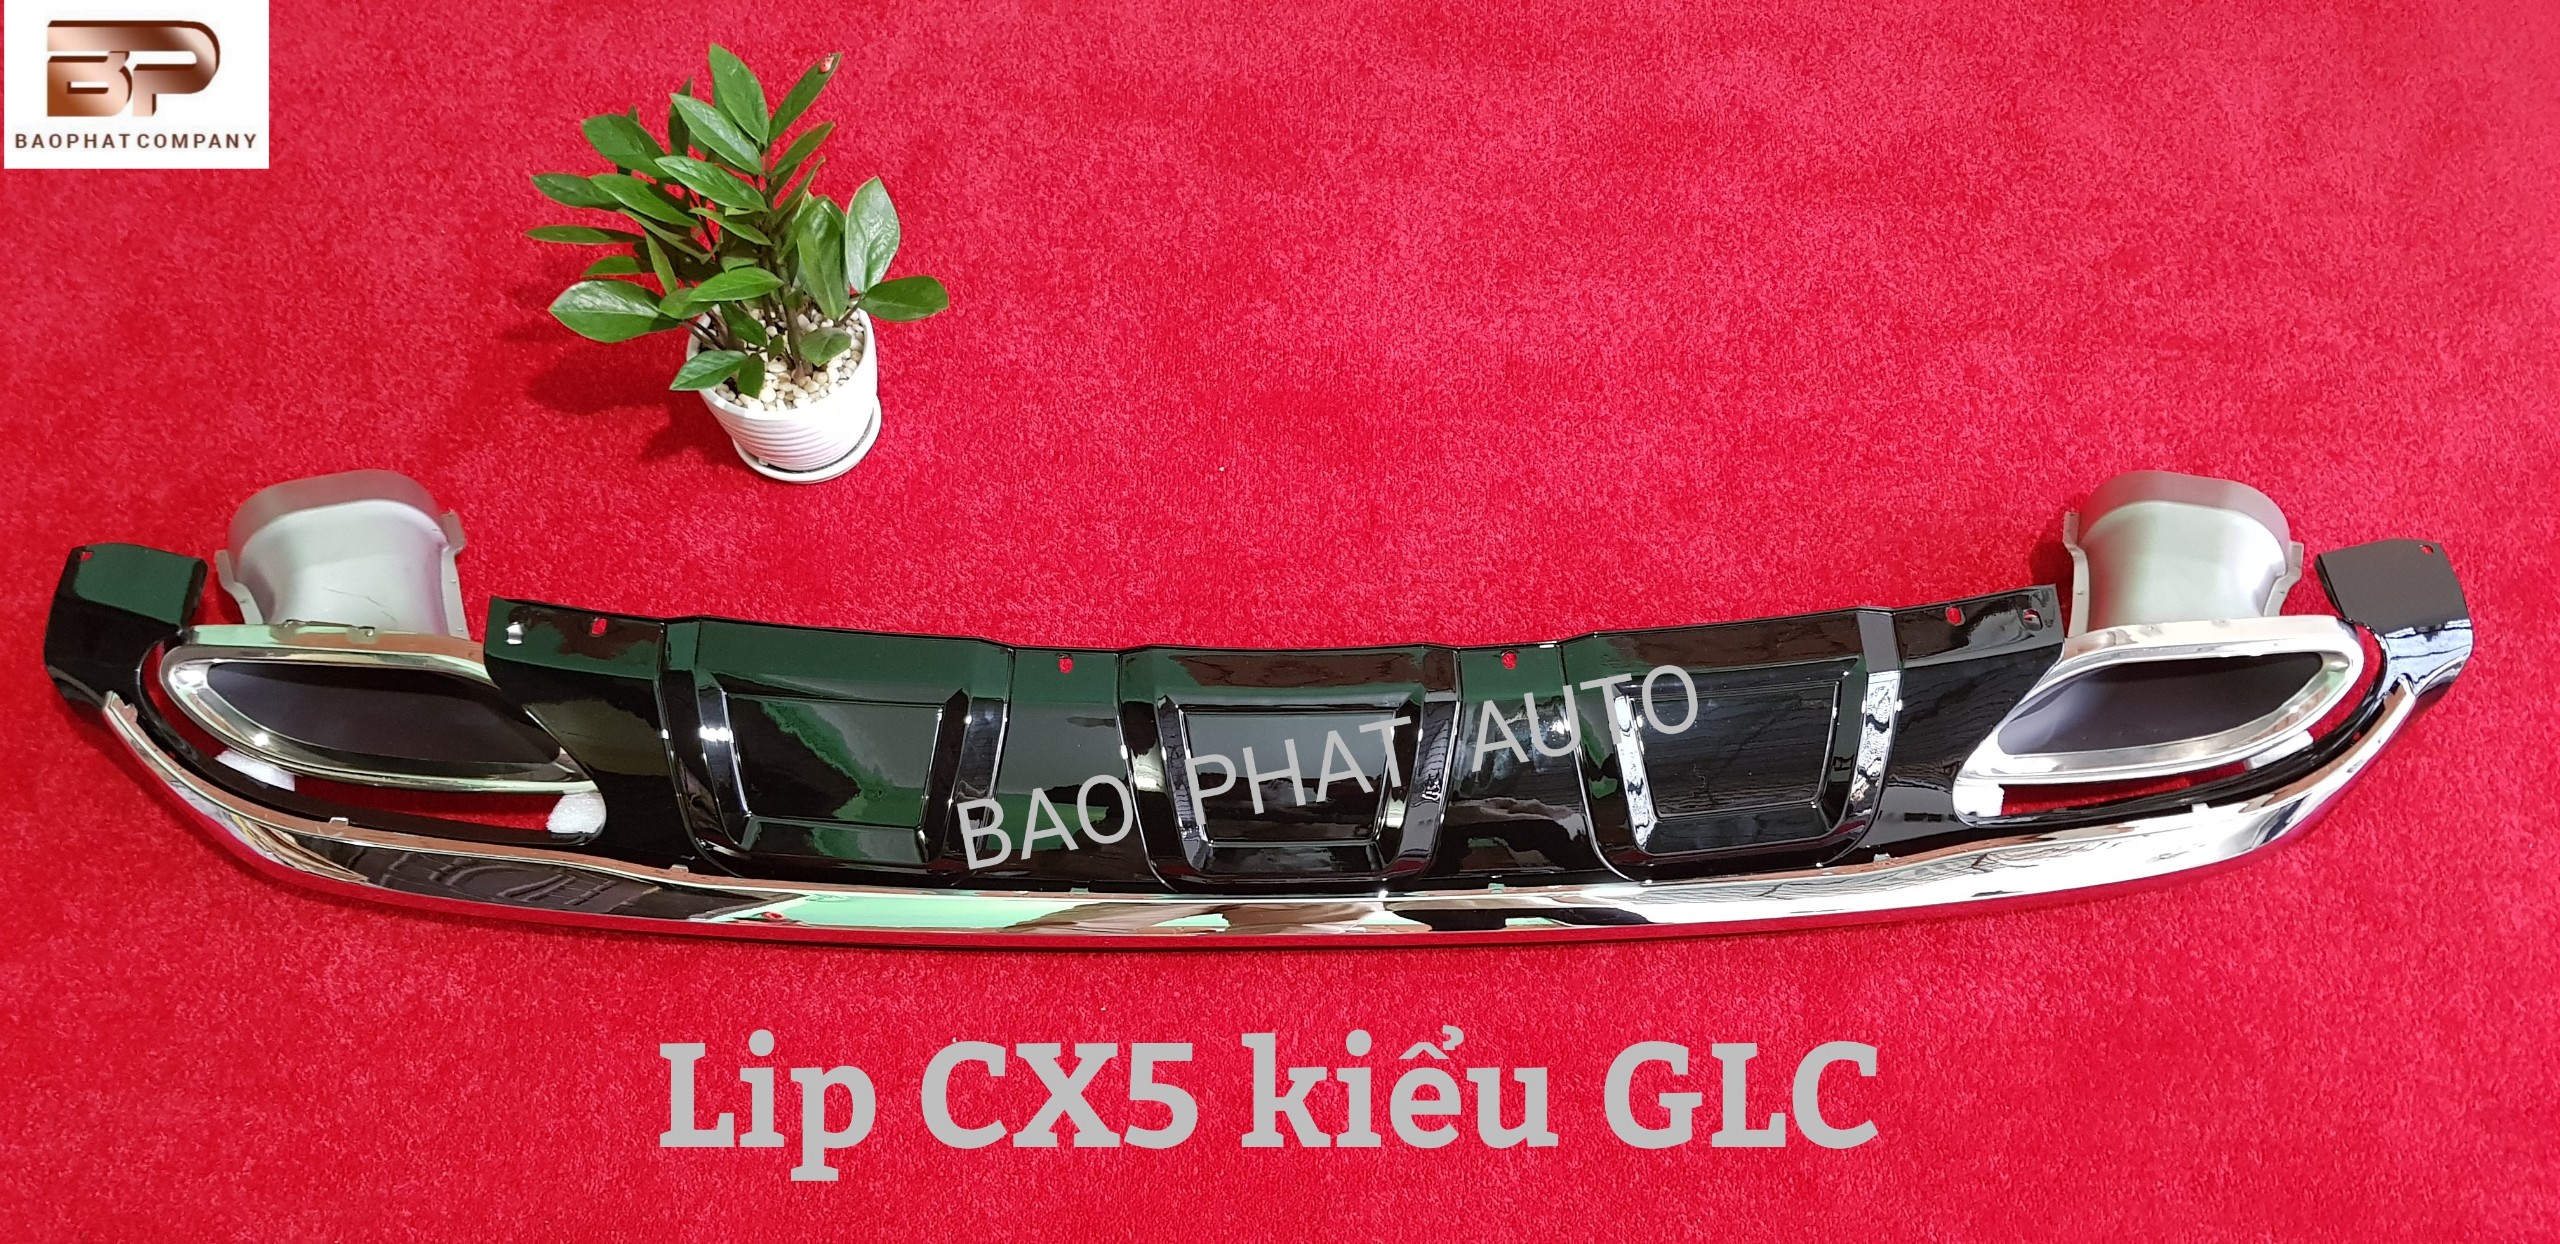 Lip CX5 kiểu GLC